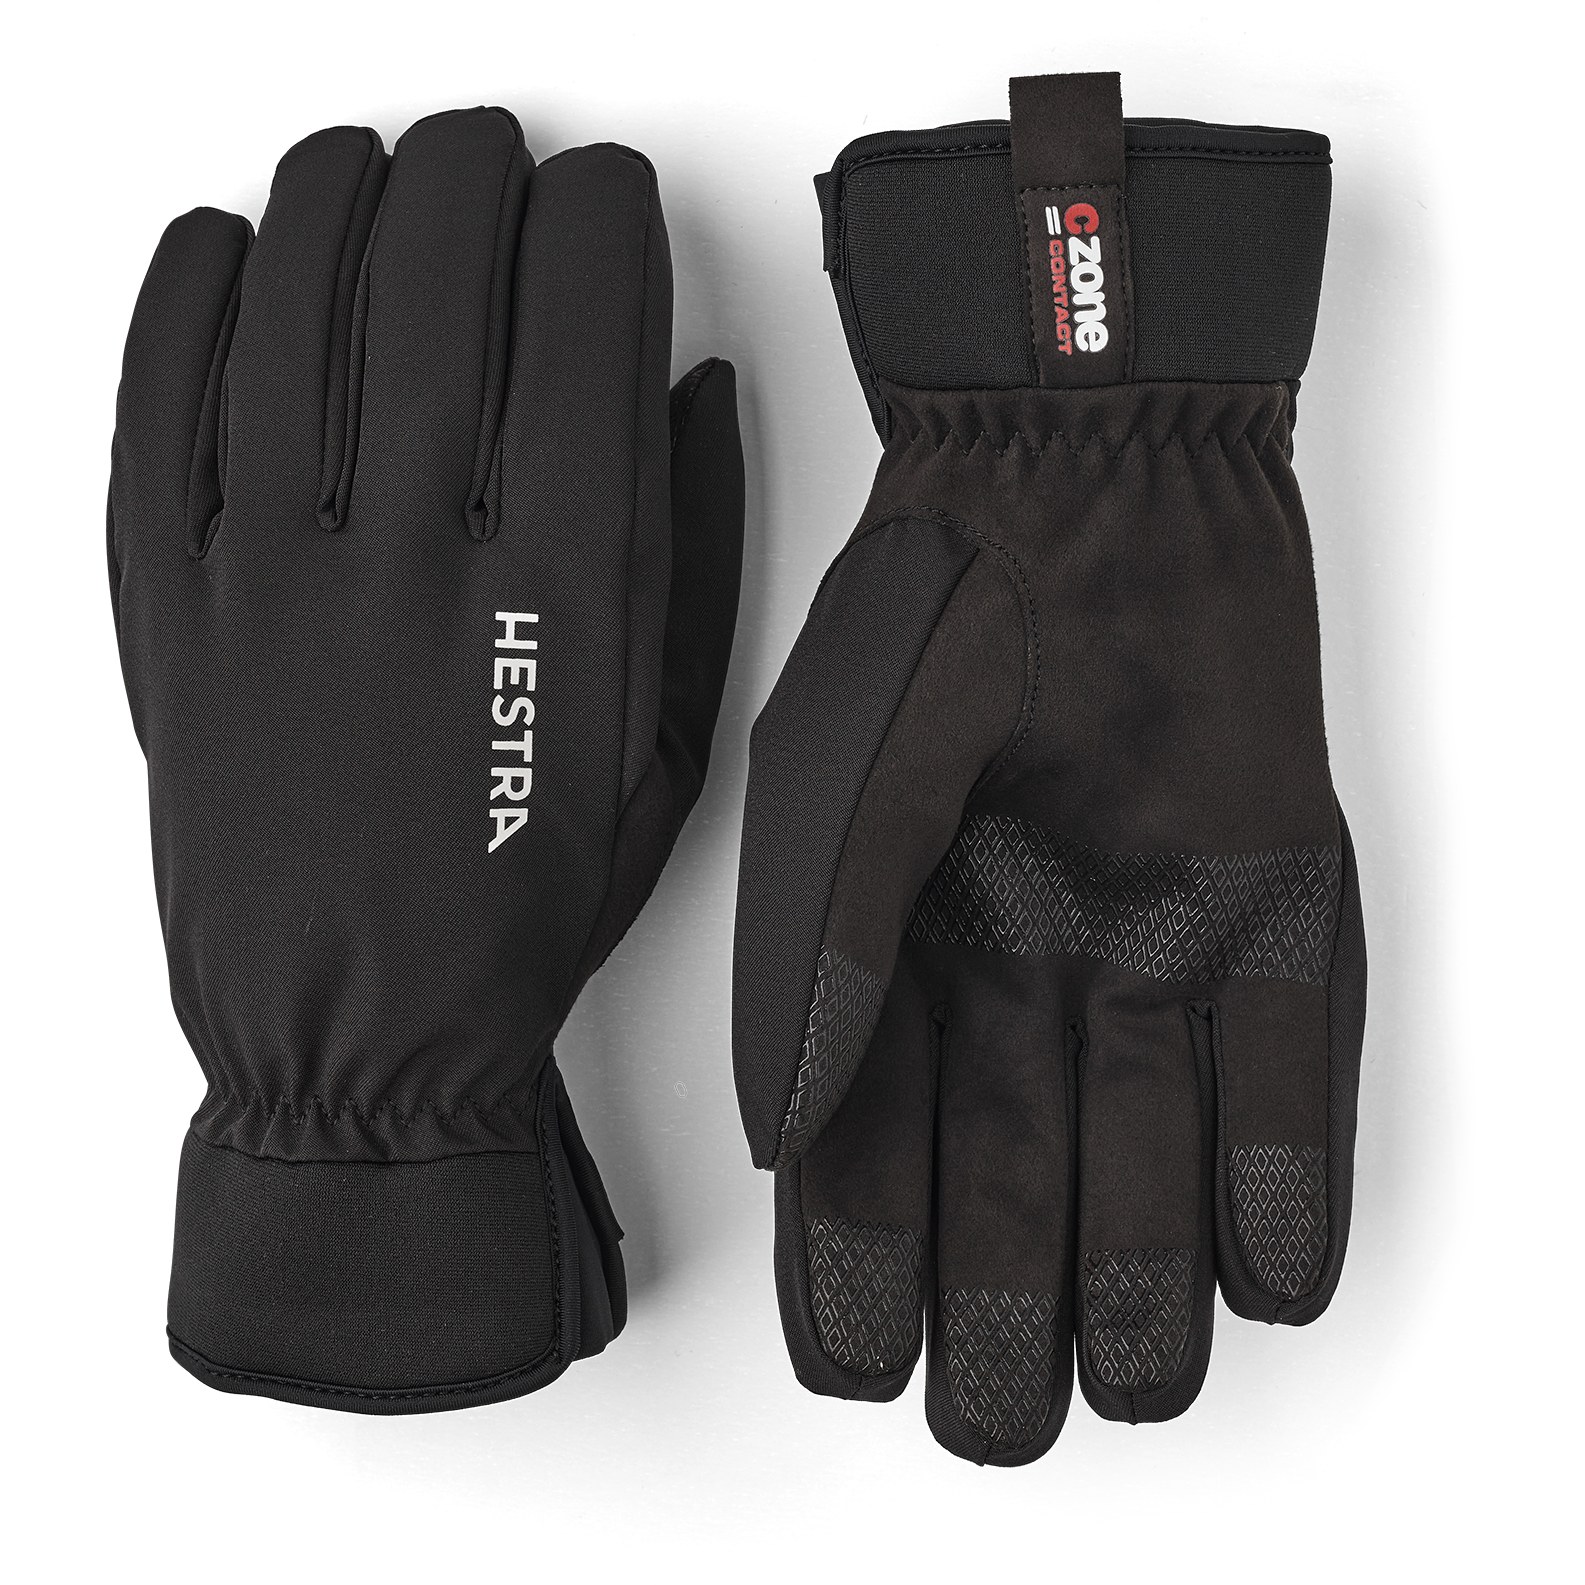 Produktbild von Hestra CZone Contact - 5 Finger Outdoor Handschuhe - schwarz